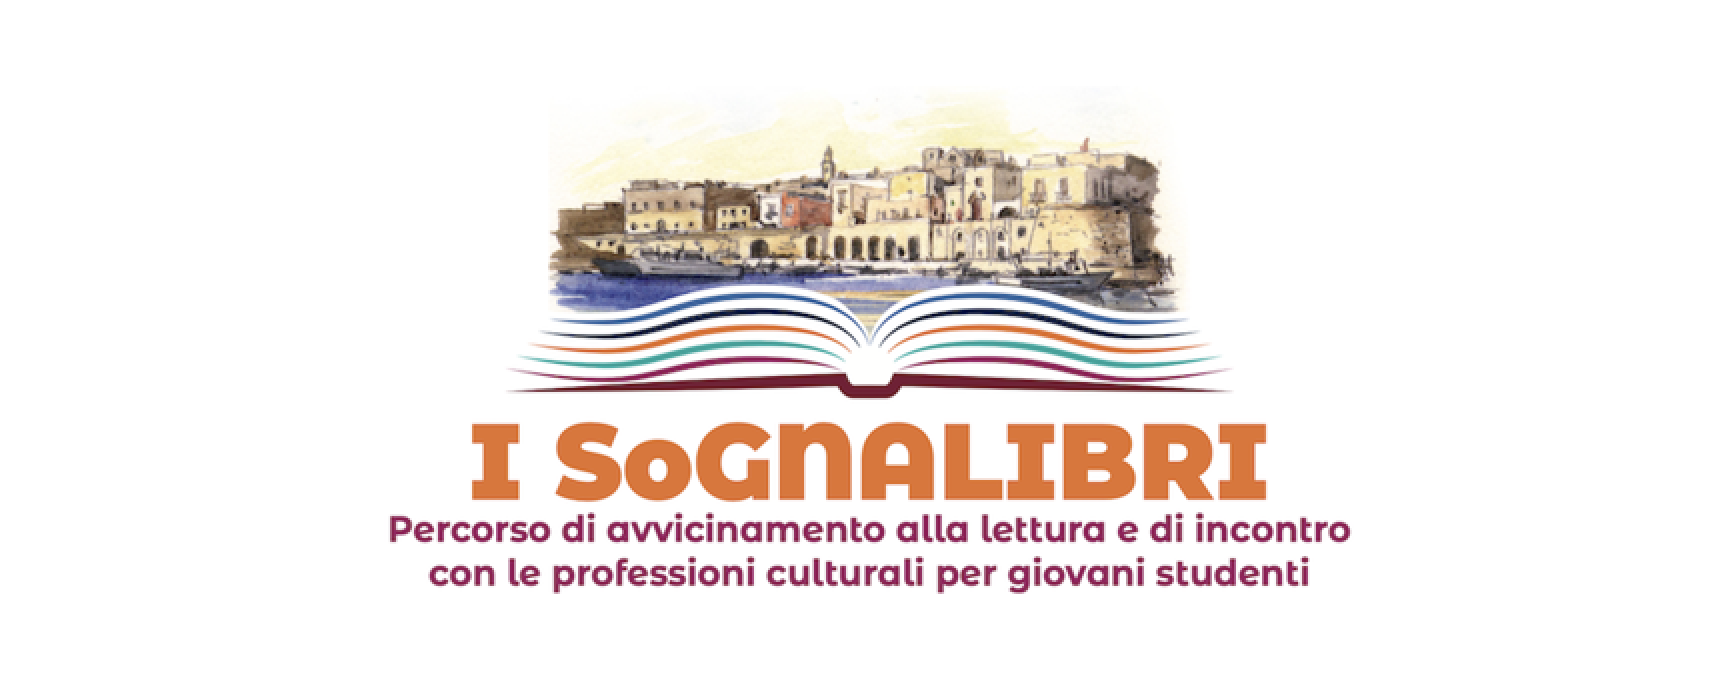 SoGNALIBRI 2022: al via iscrizioni per progetto di “Libri nel Borgo Antico” rivolto a studenti